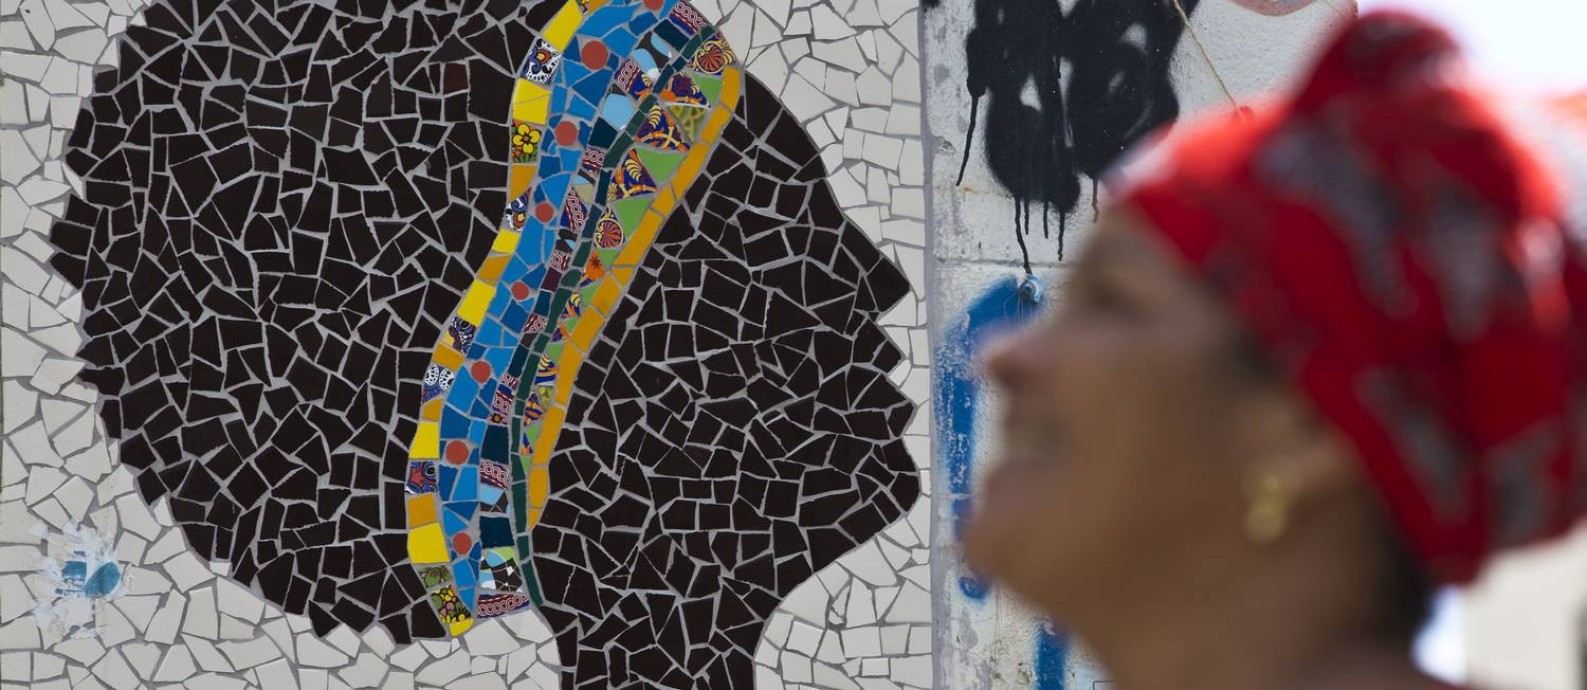 Grafites, pichações e murais com referência a Marielle, como o mosaico na Pedra do Sal, se espalham pela cidade Foto: Márcia Foletto / Agência O Globo